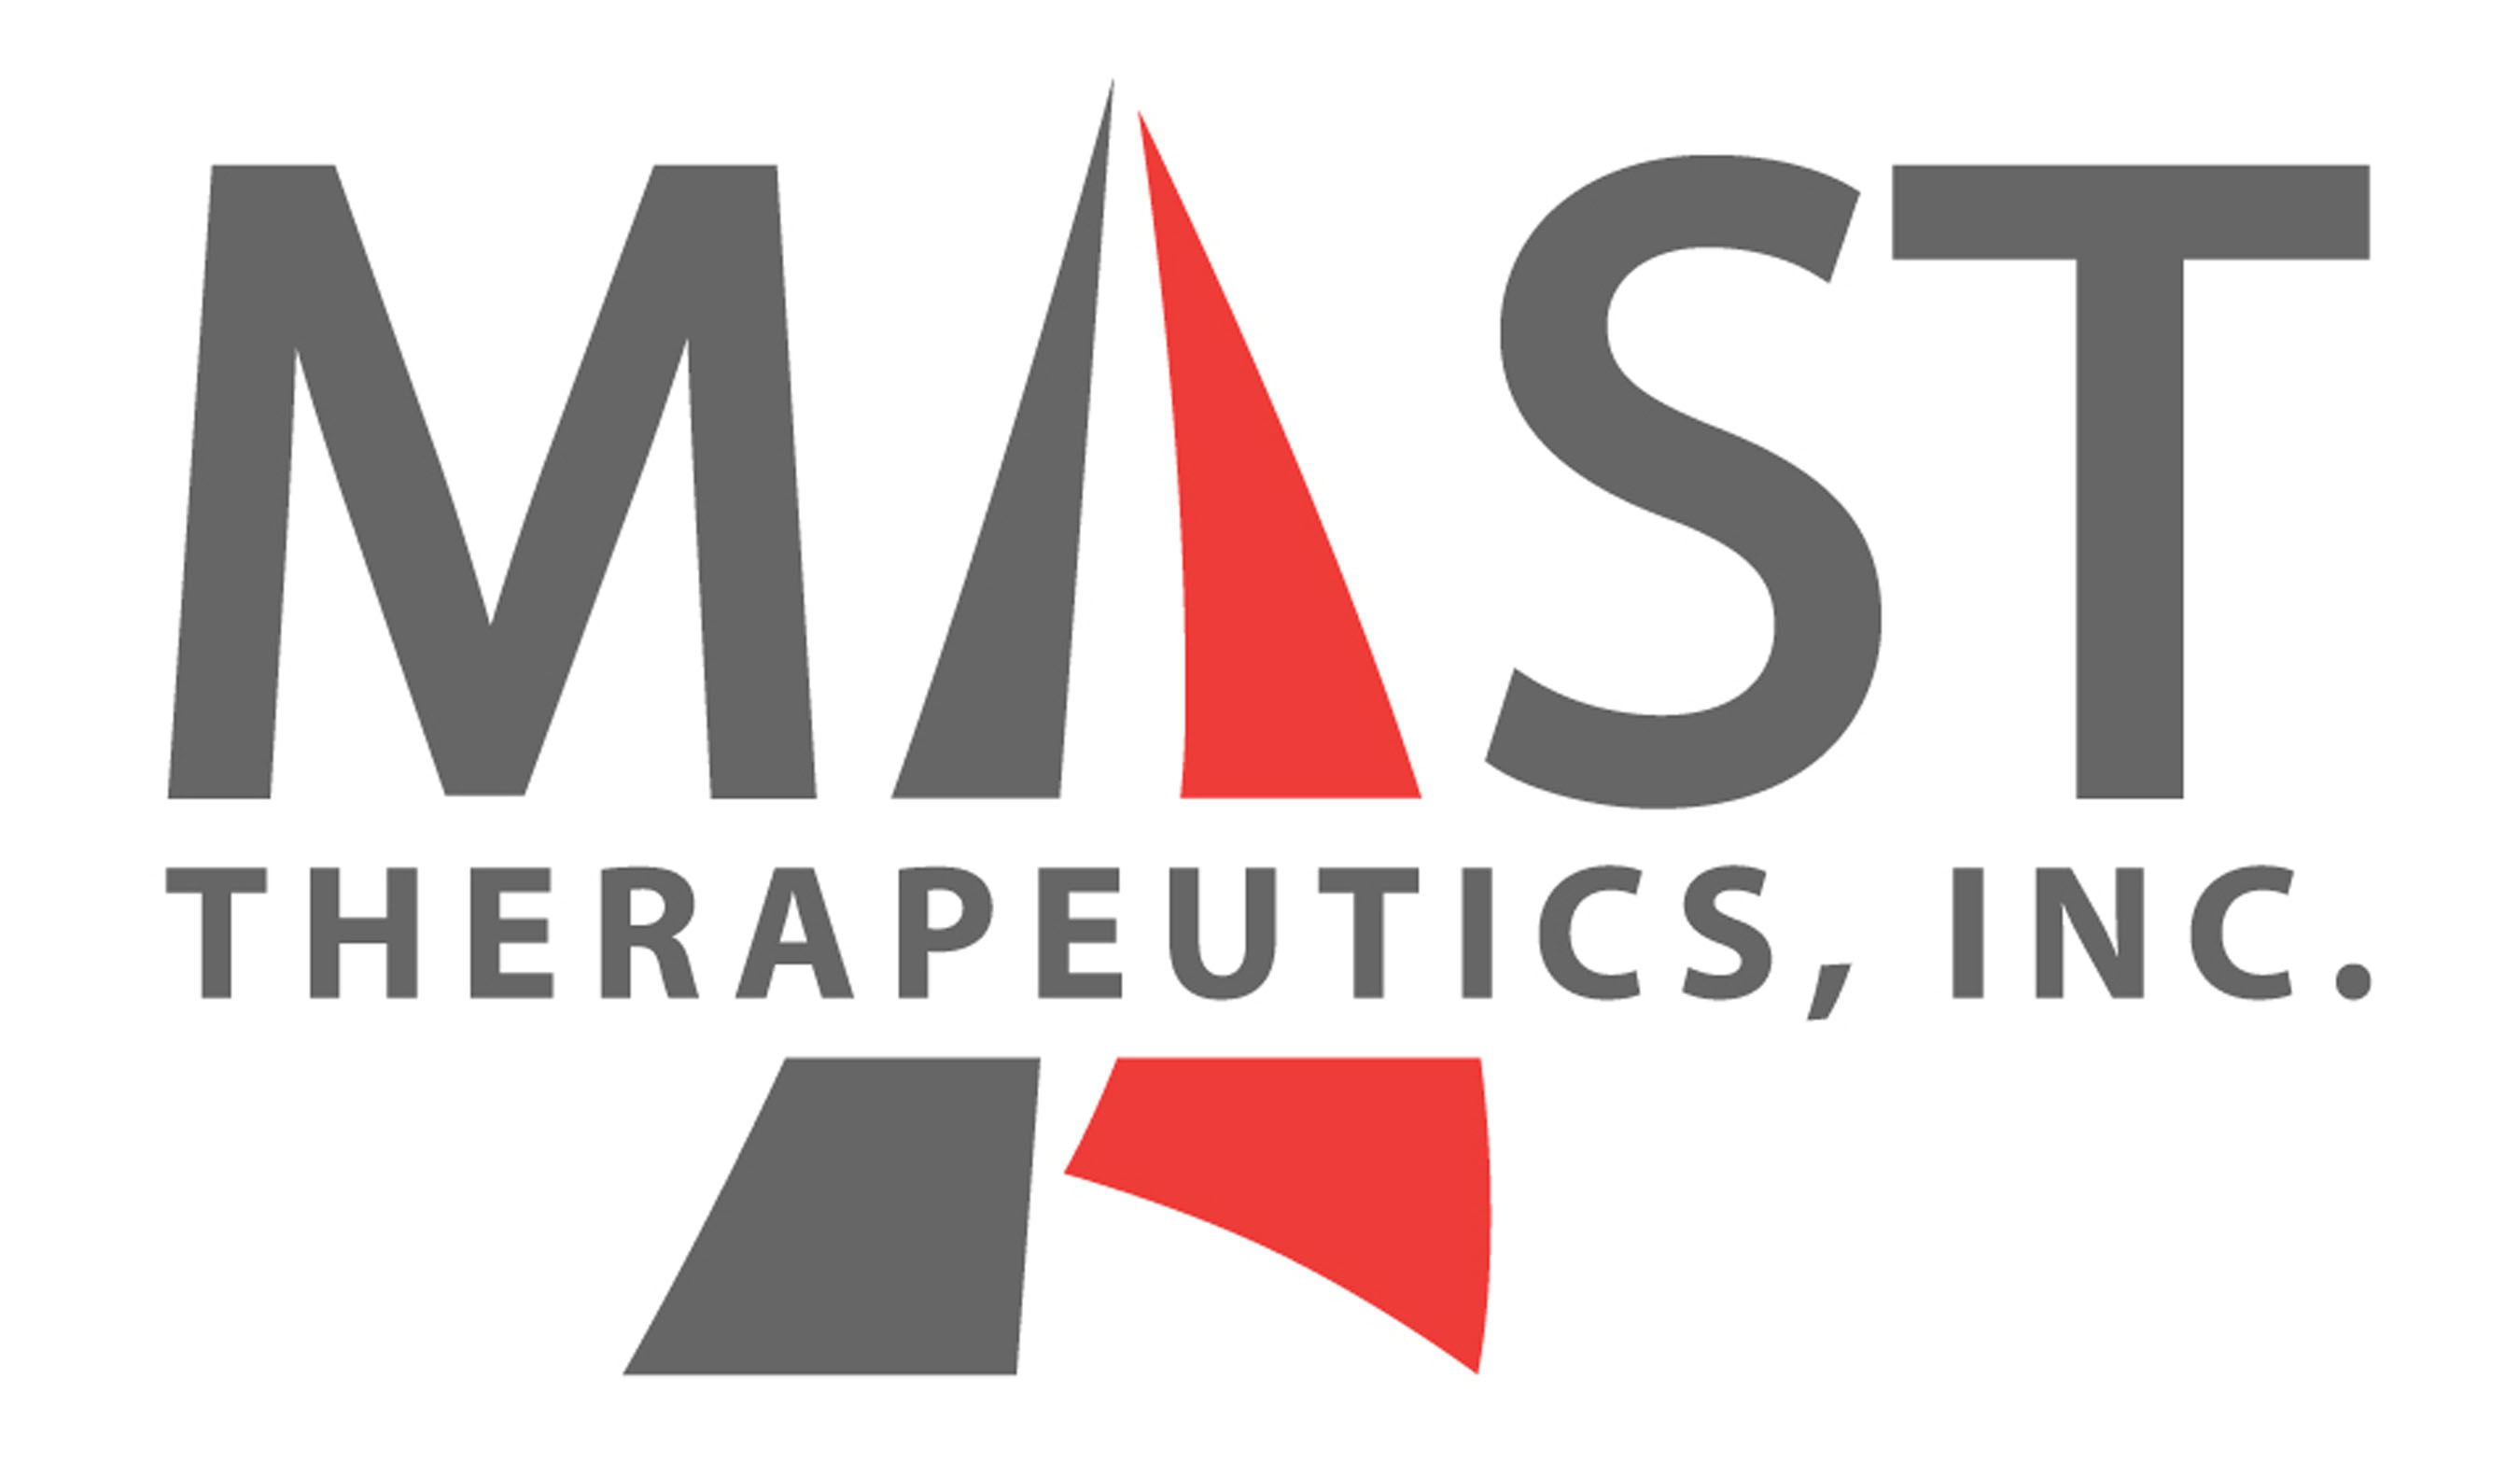 Mast Therapeutics, Inc. logo. (PRNewsFoto/Mast Therapeutics, Inc.) (PRNewsFoto/)